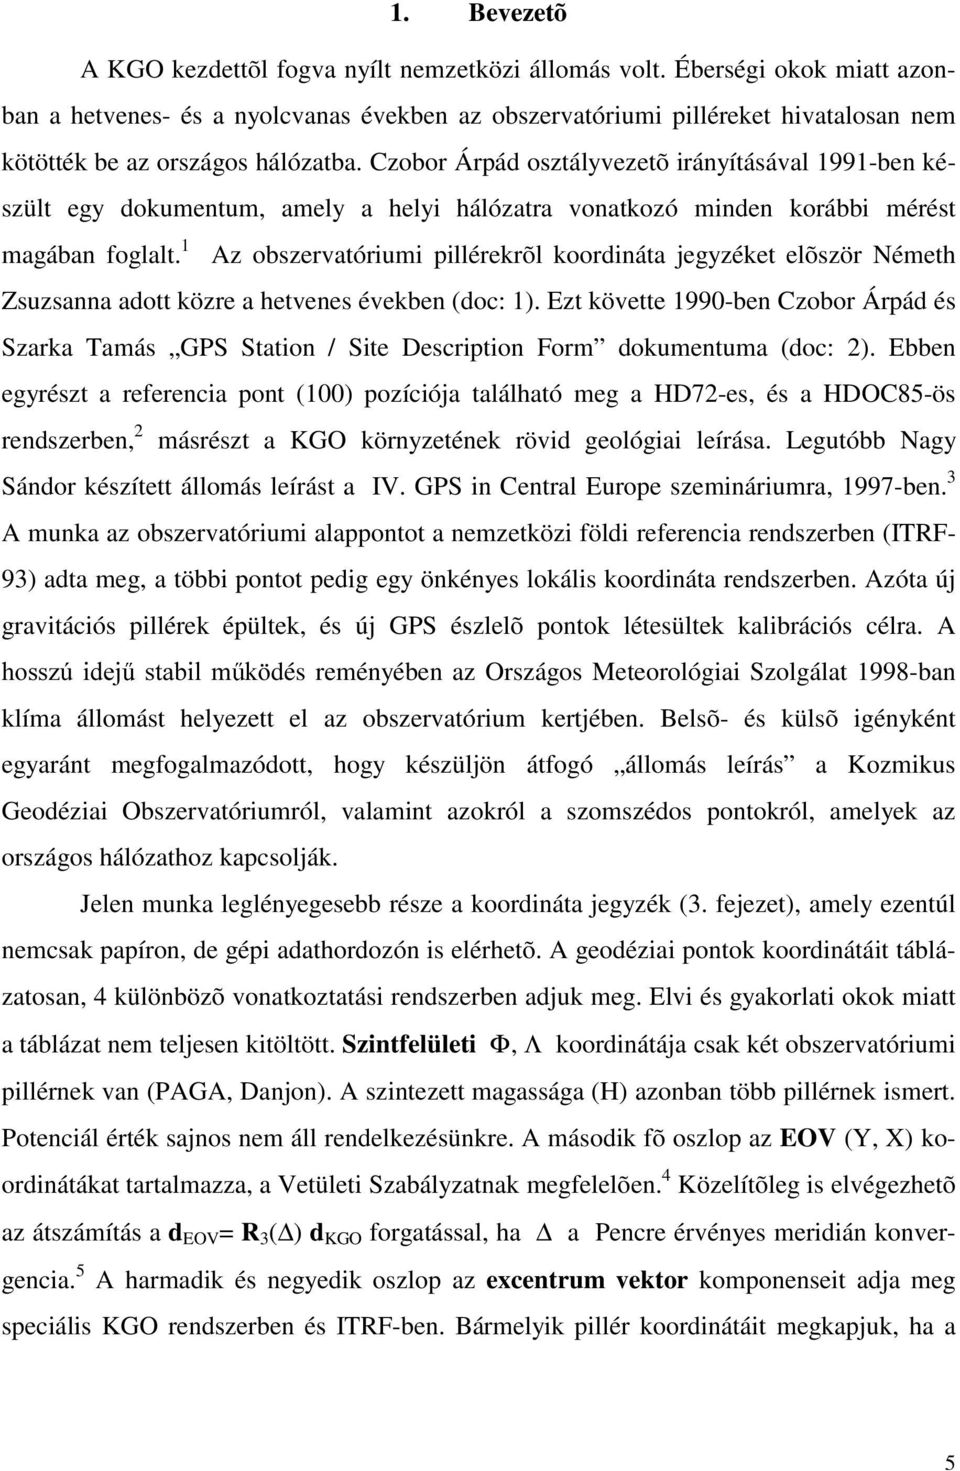 Czobor Árpád osztályvezetõ irányításával 1991-ben készült egy dokumentum, amely a helyi hálózatra vonatkozó minden korábbi mérést magában foglalt.